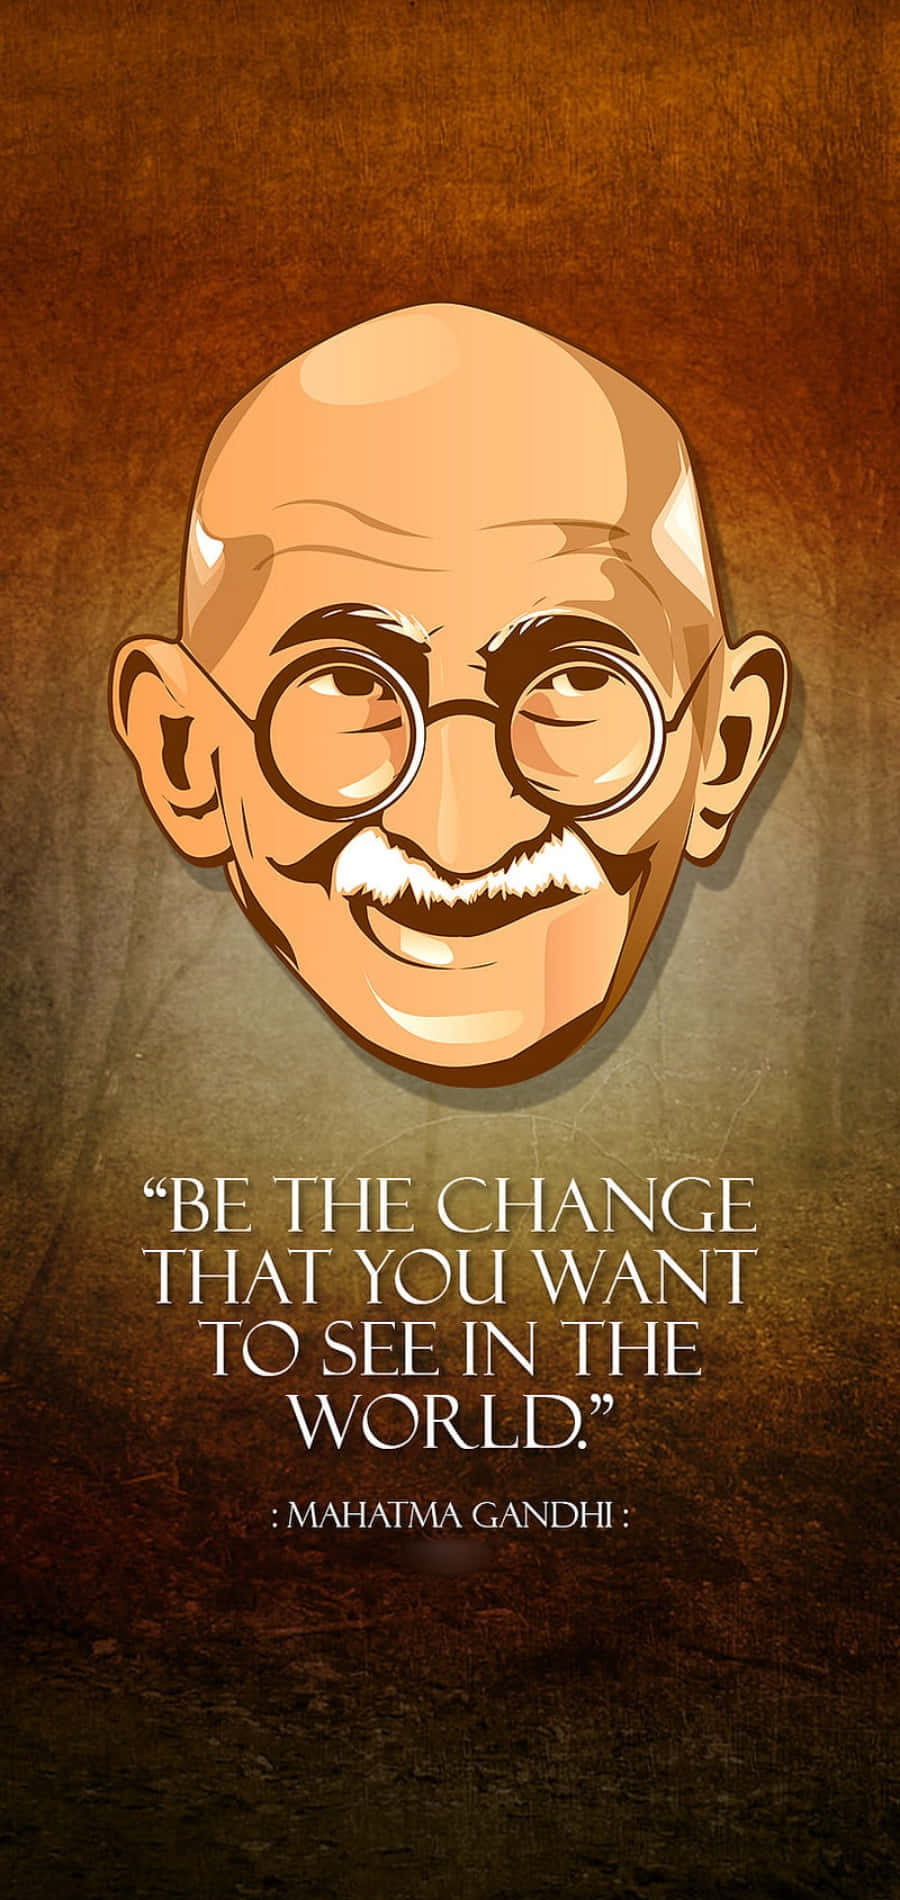 Inspirerendelederskab Af Mahatma Gandhi.